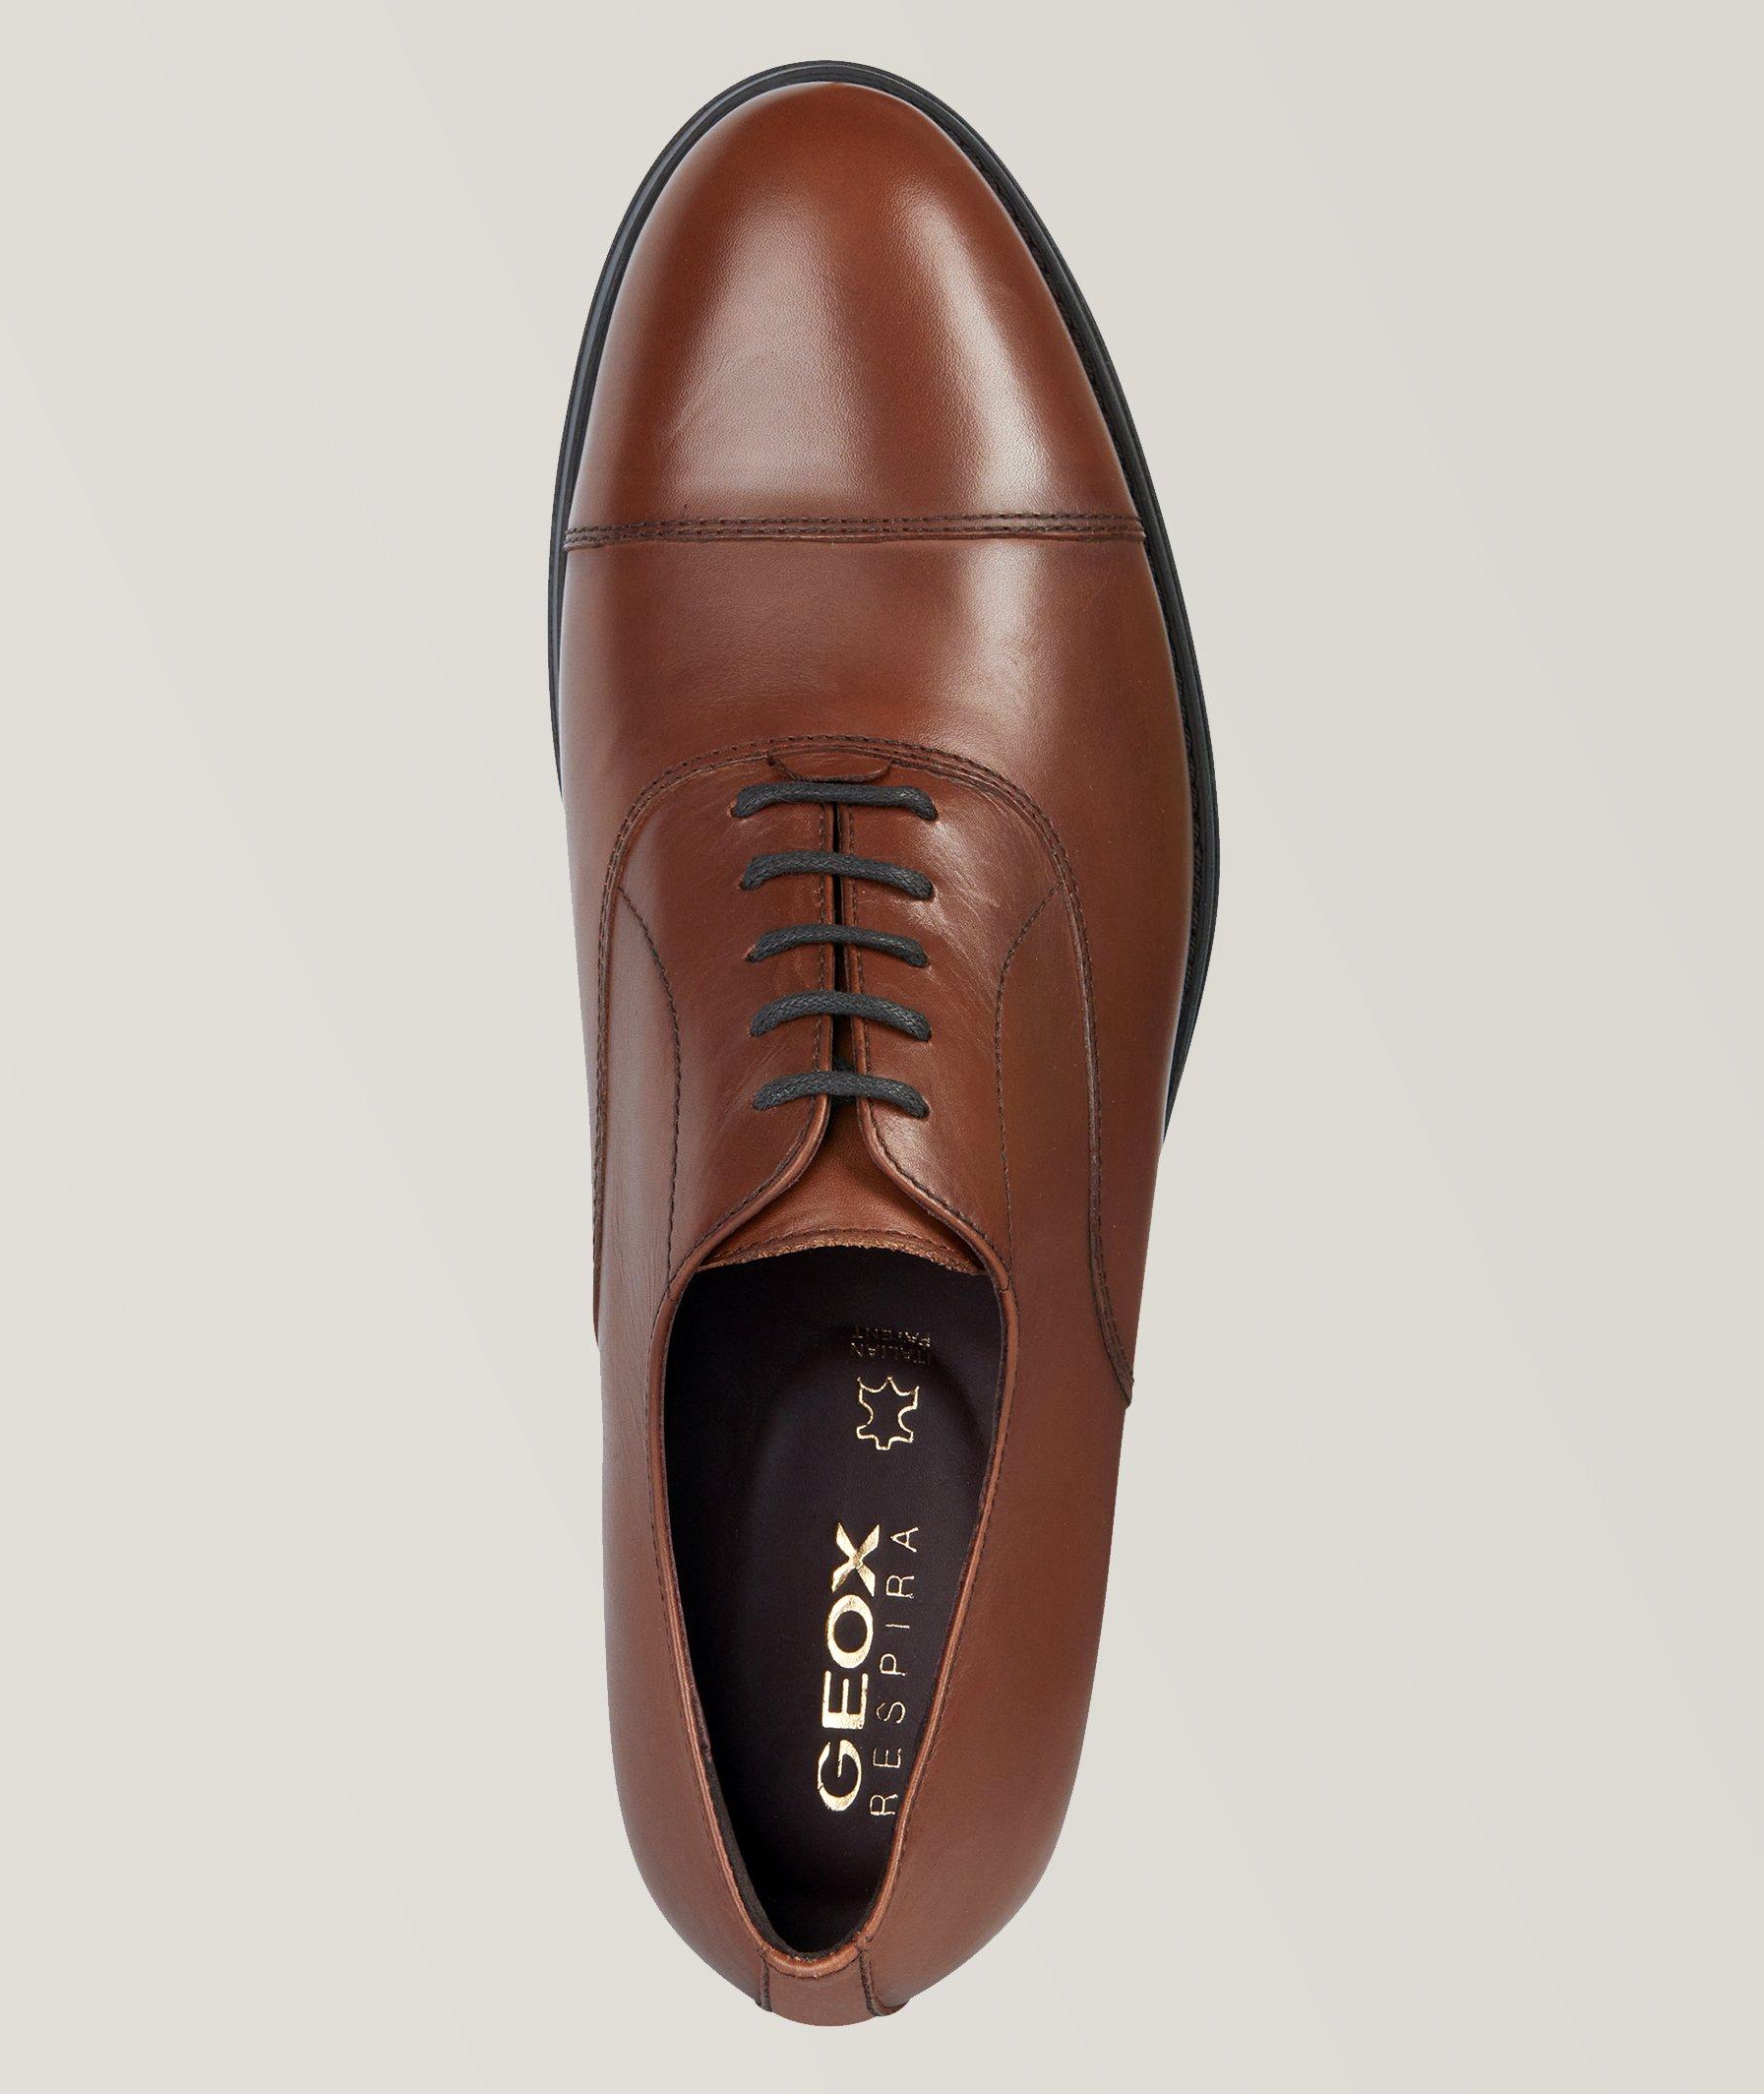 Chaussure lacée Decio en cuir image 4